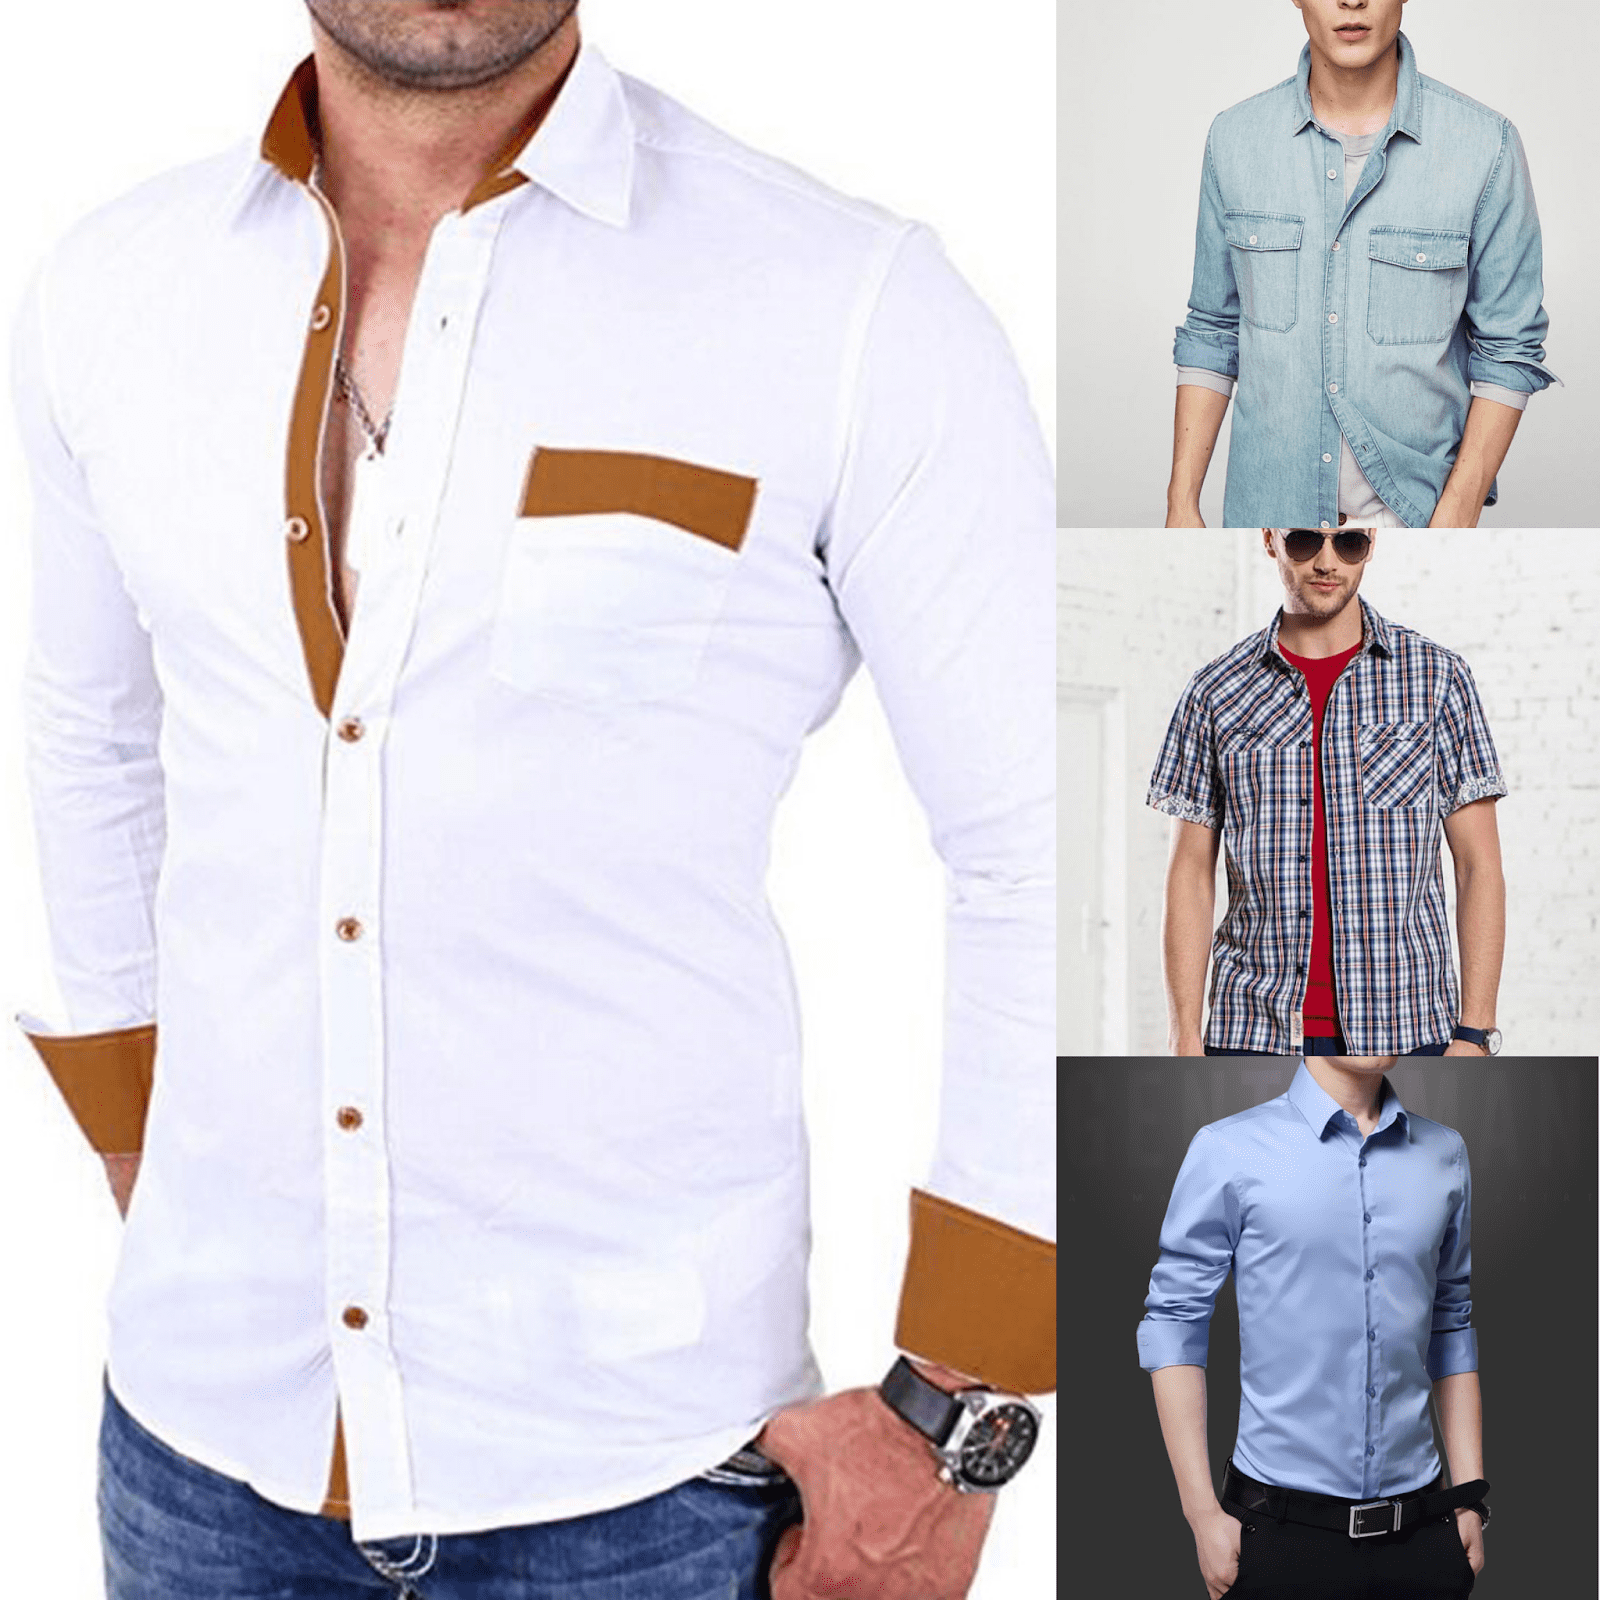 Лучшие бренды мужских рубашек с достоинствами и недостатками